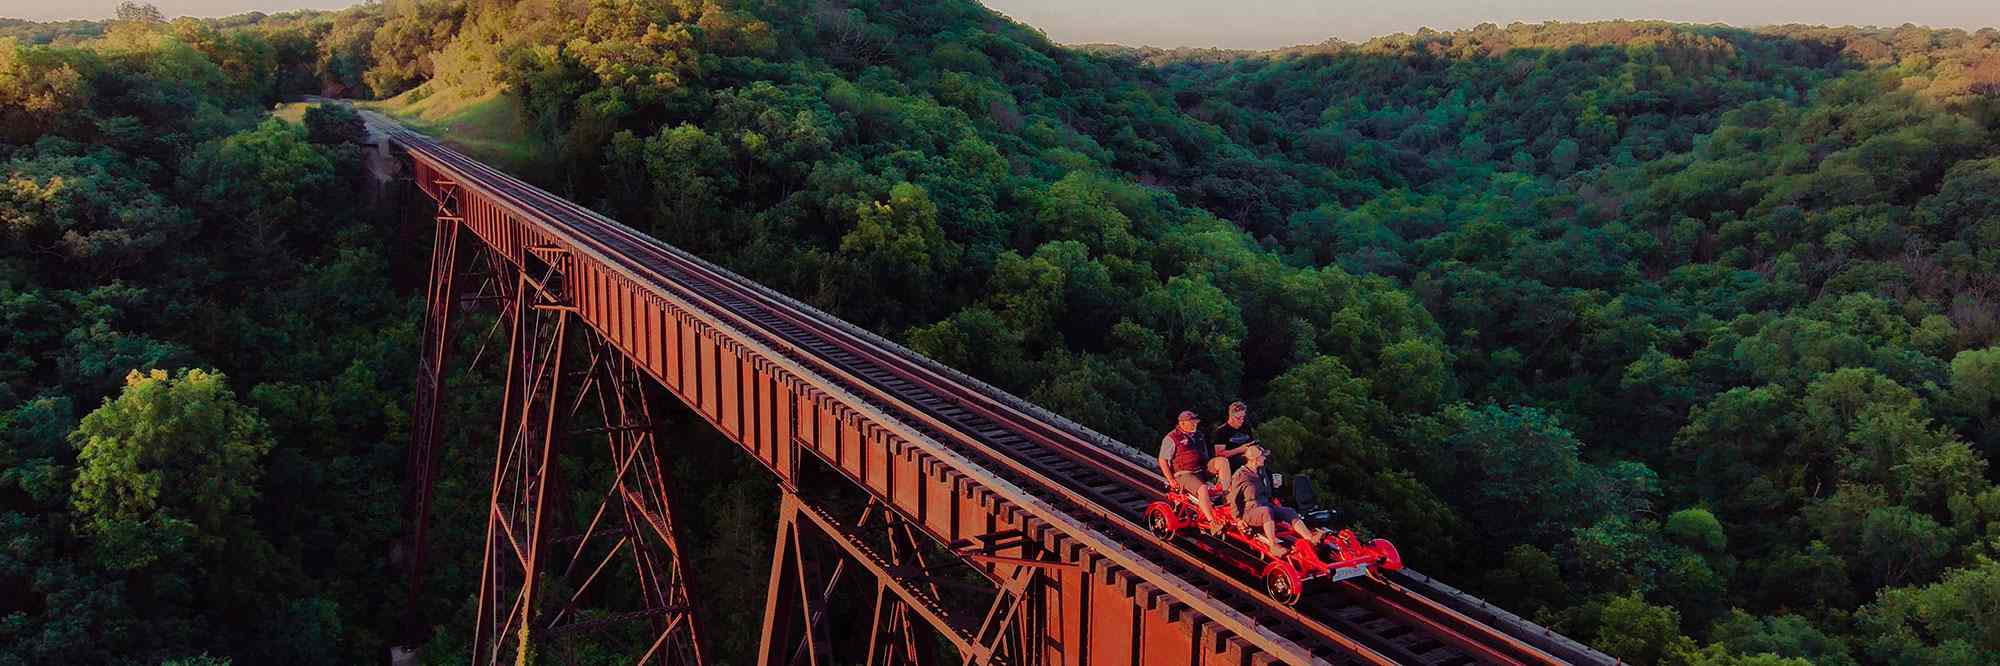 Boone Rail Explorers bridge across valley